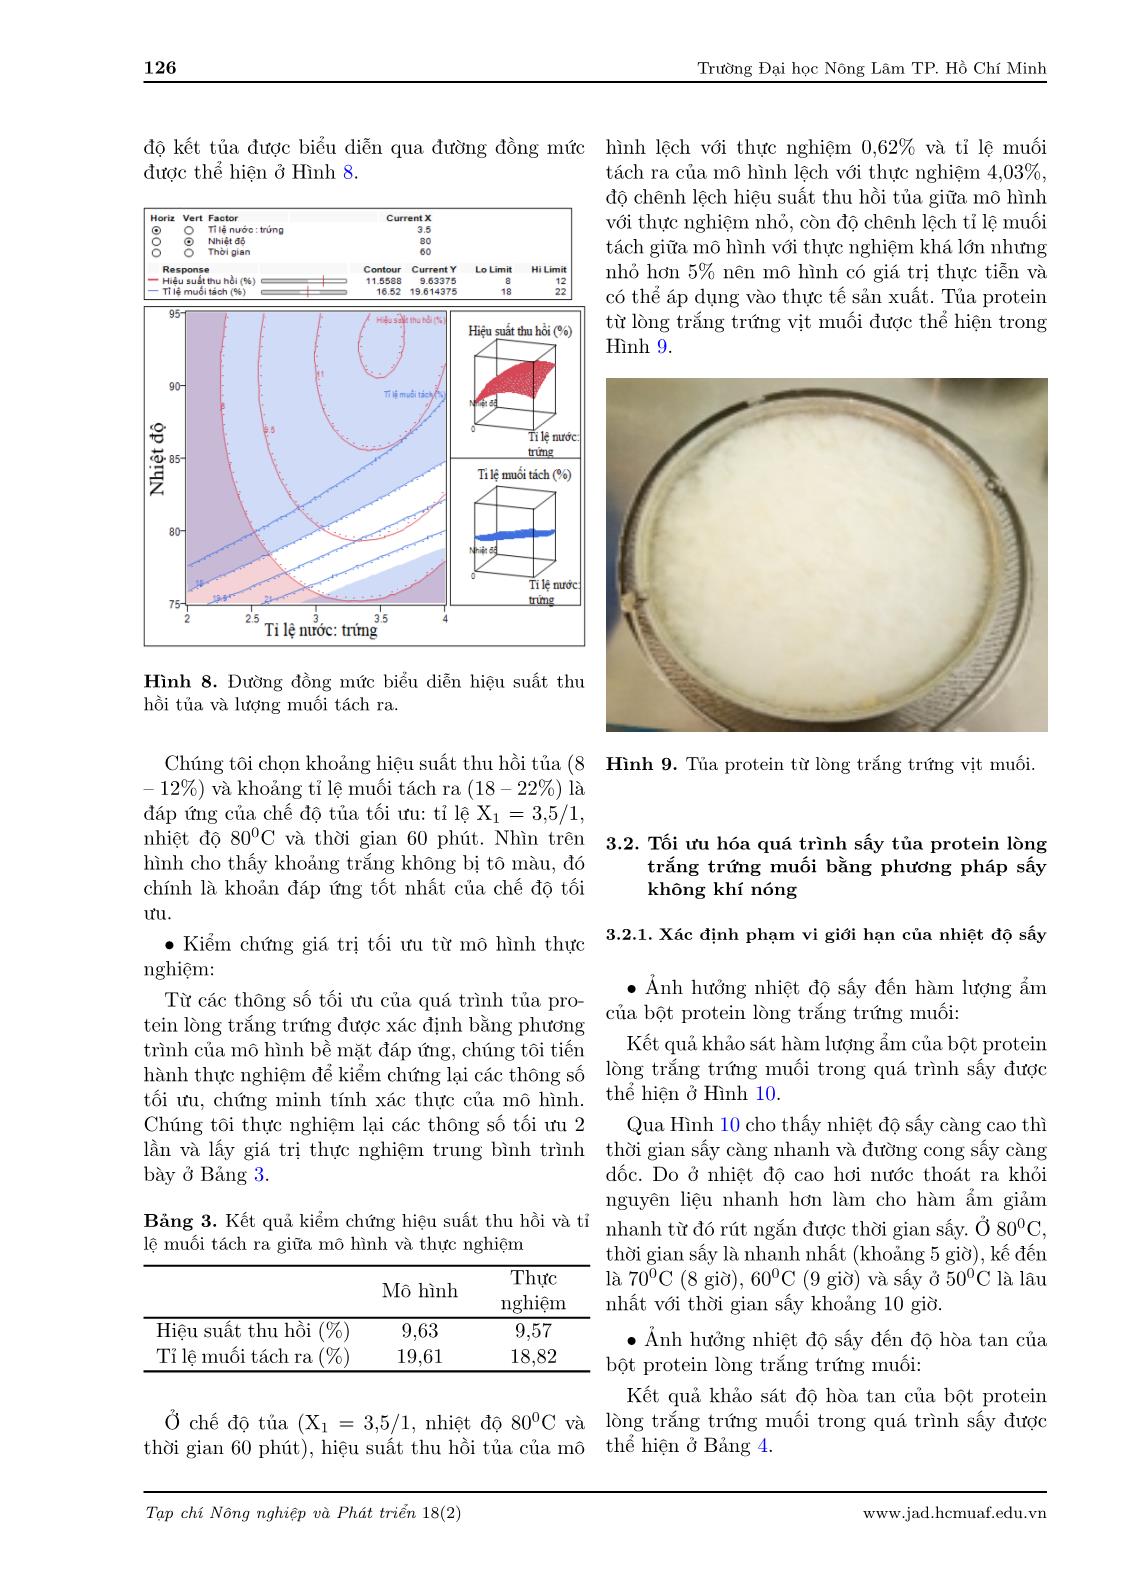 Nghiên cứu sản xuất bột protein từ lòng trắng trứng vịt muối trang 8